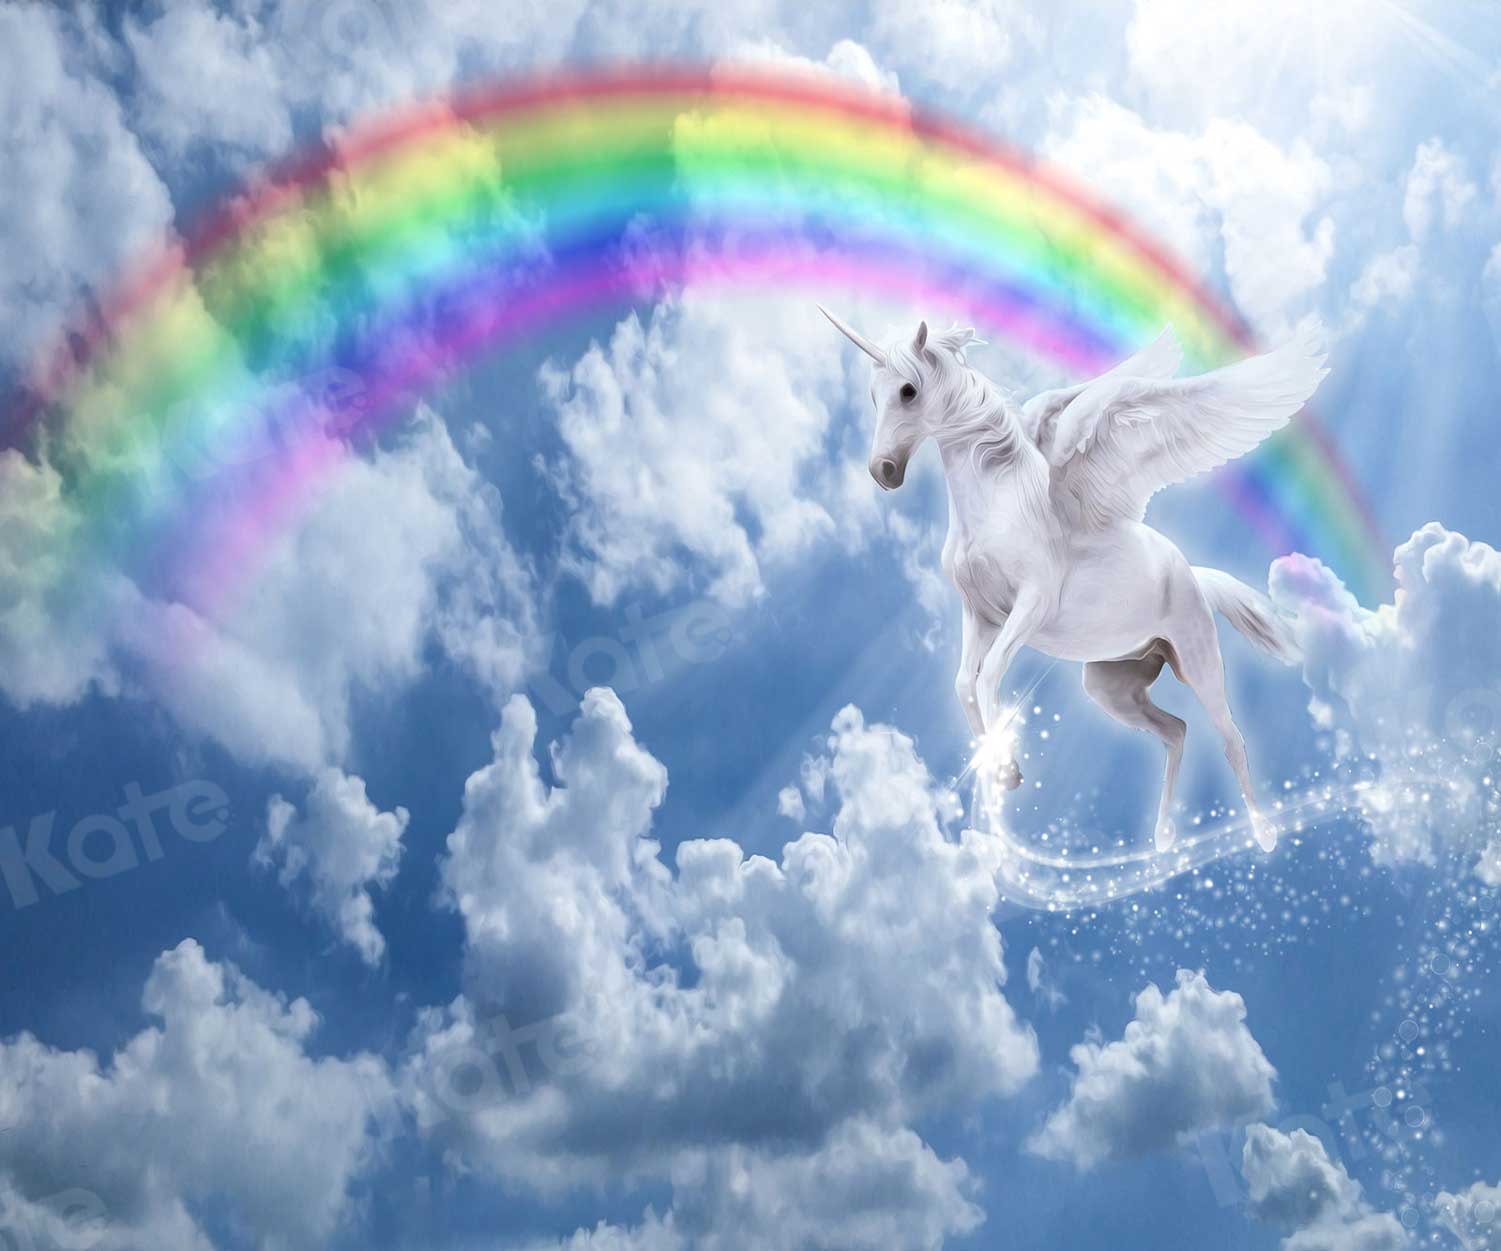 Kate cielo arcoíris unicornio Telón de fondo para fotografía